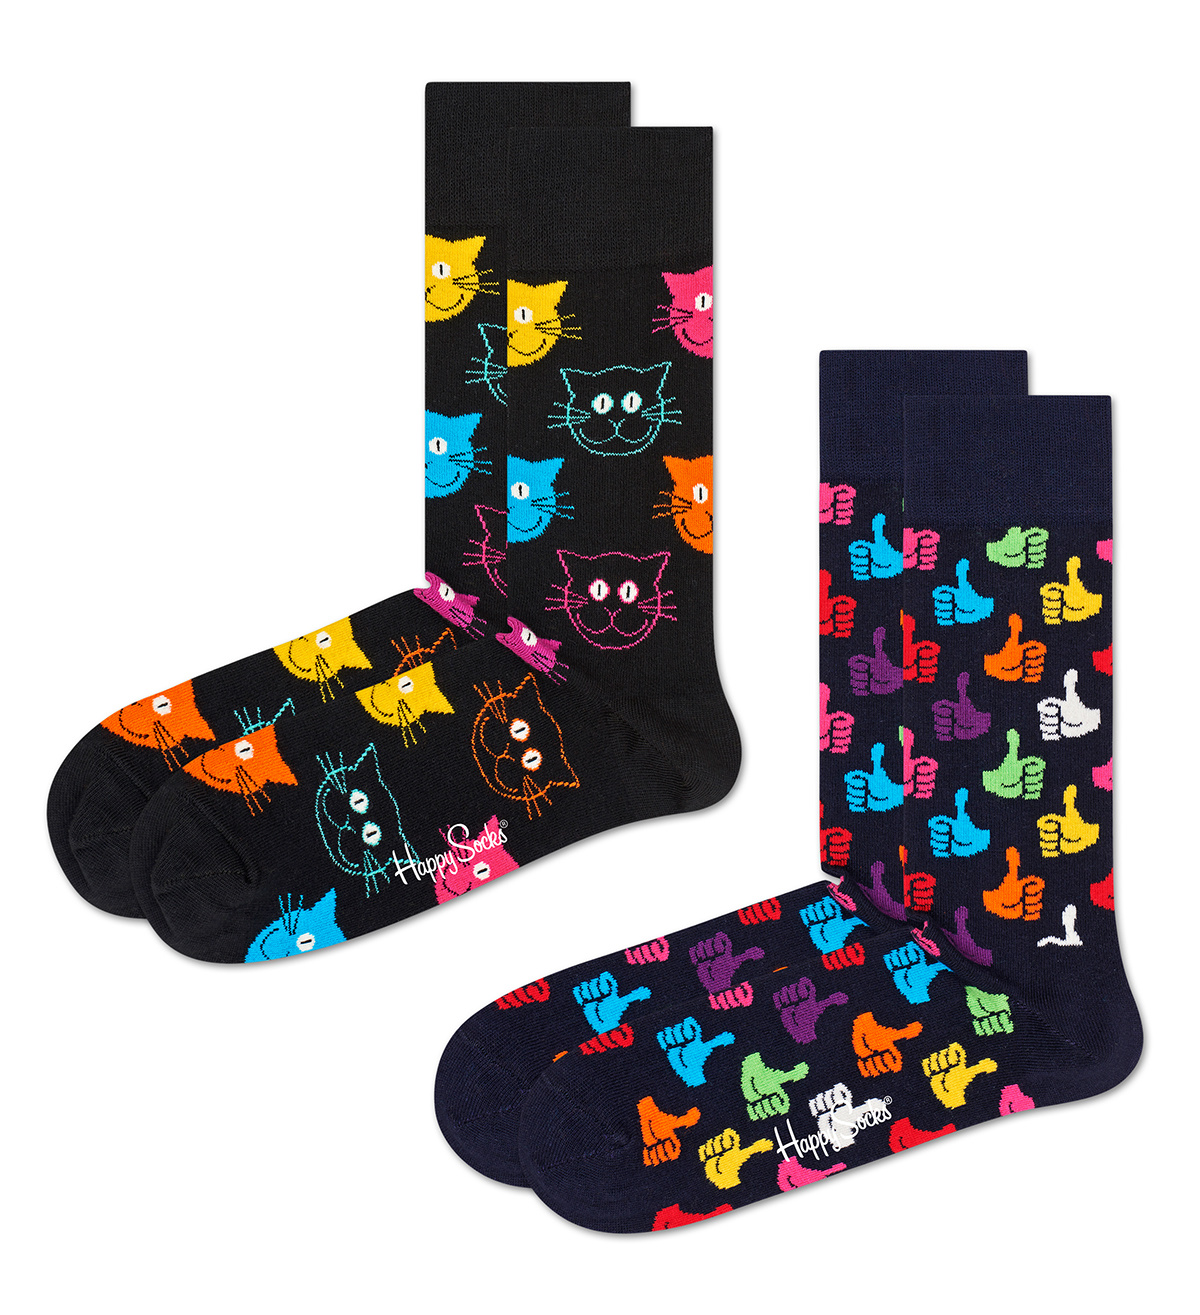 kennisgeving daar ben ik het mee eens As Happy Socks Dames Heren Sokken Classic Cat Socks 2-Pack | Underwear District